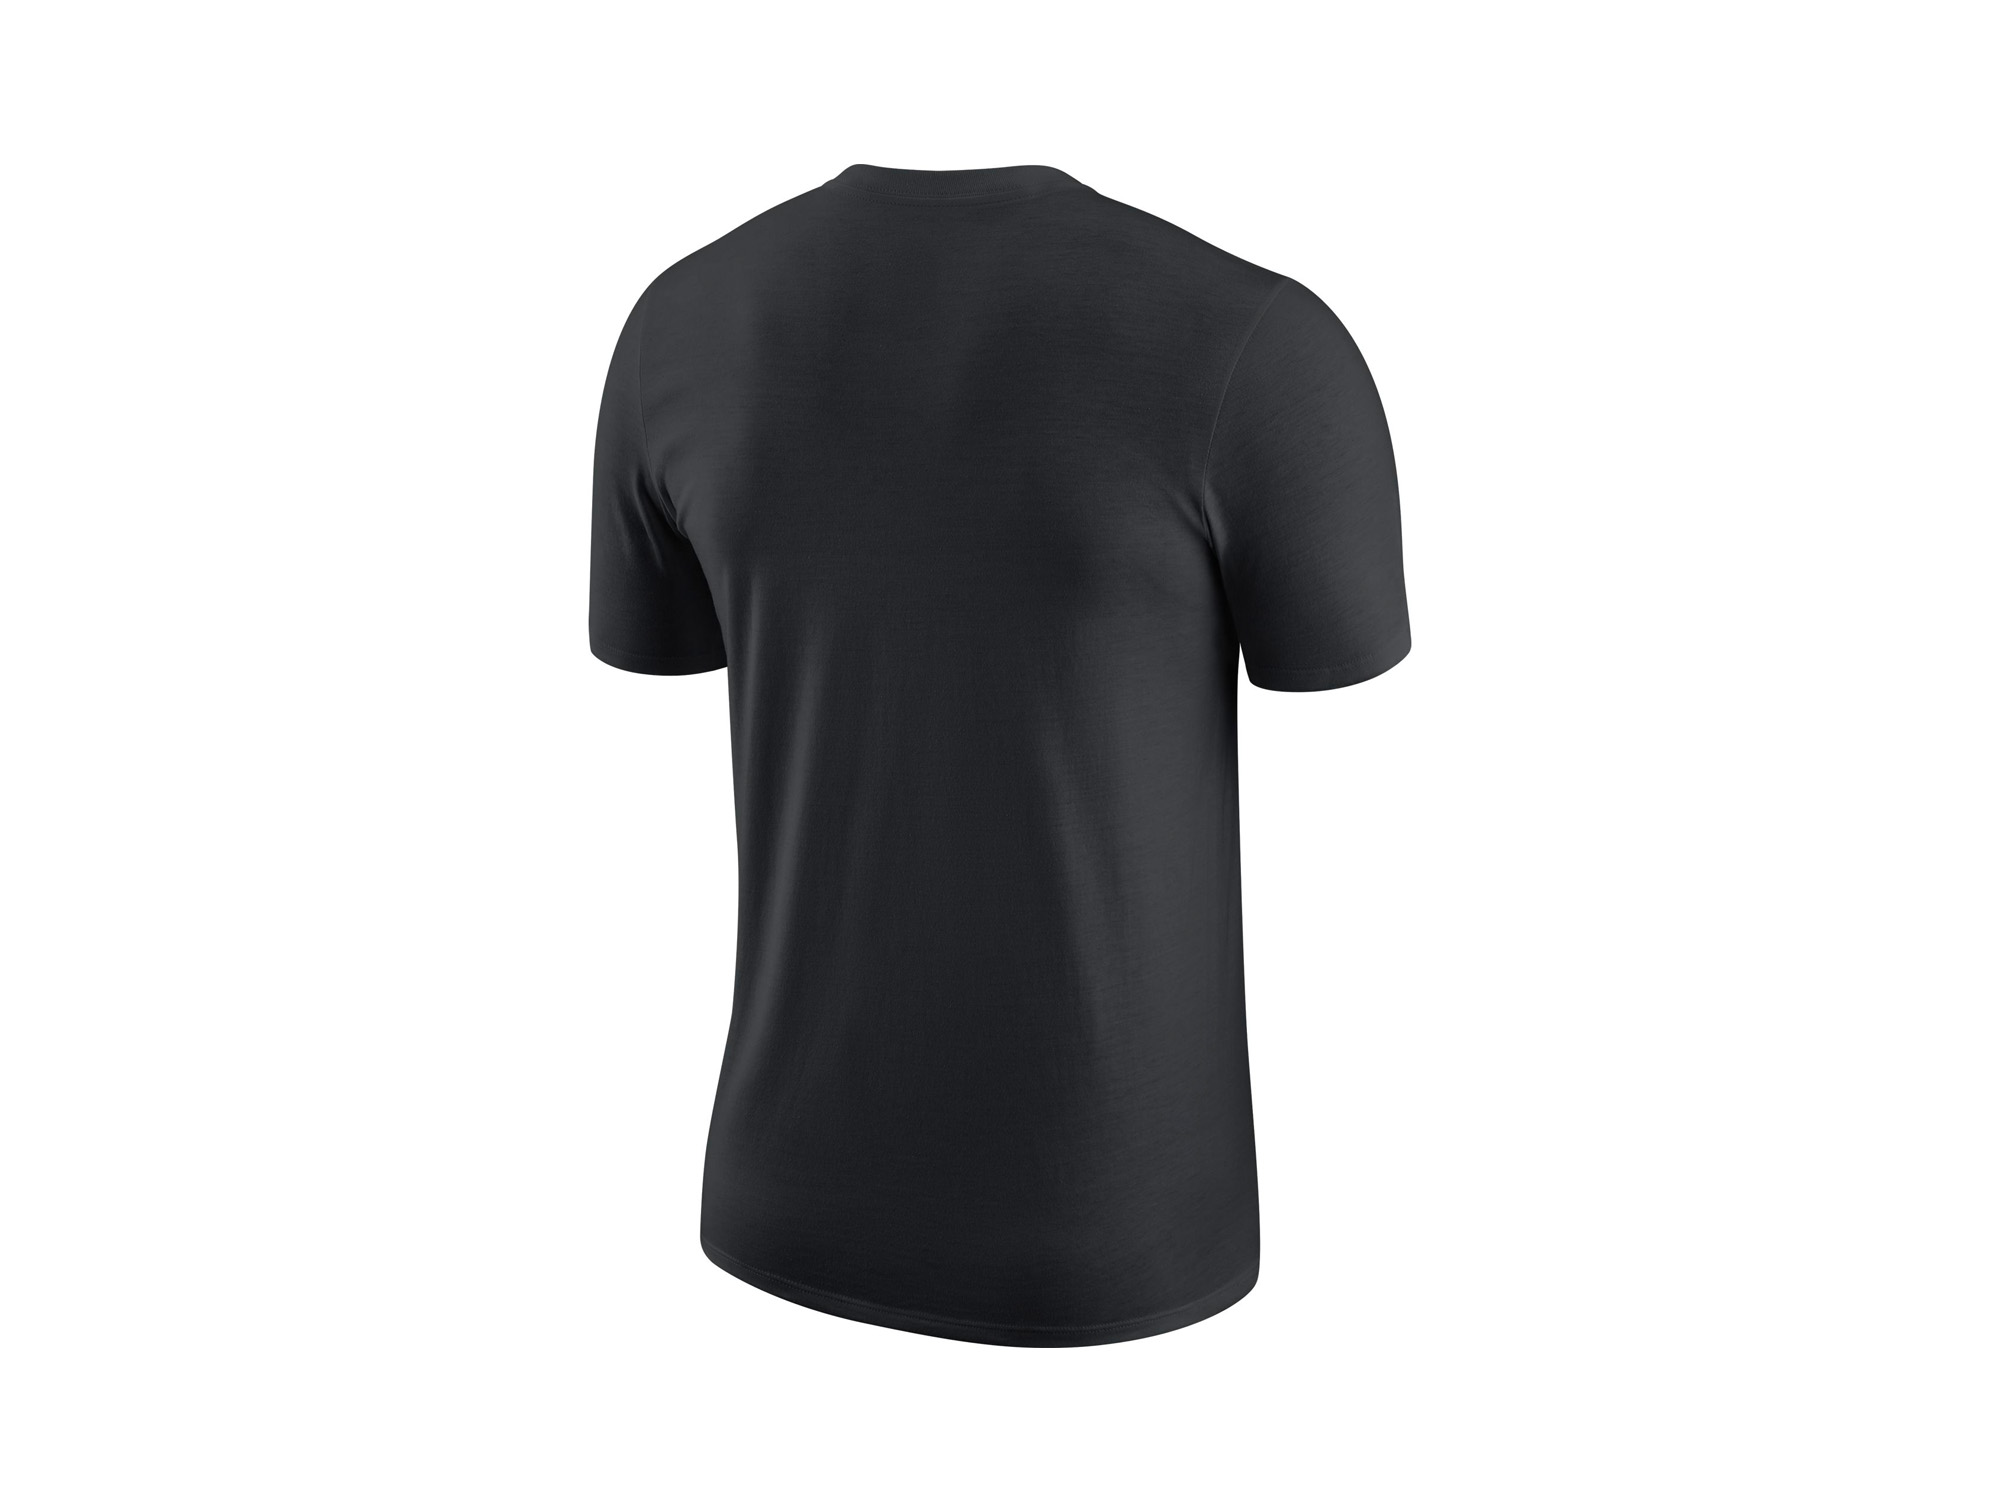 Nike Giannis Antetokounnmpo Player Logo T-Shirt